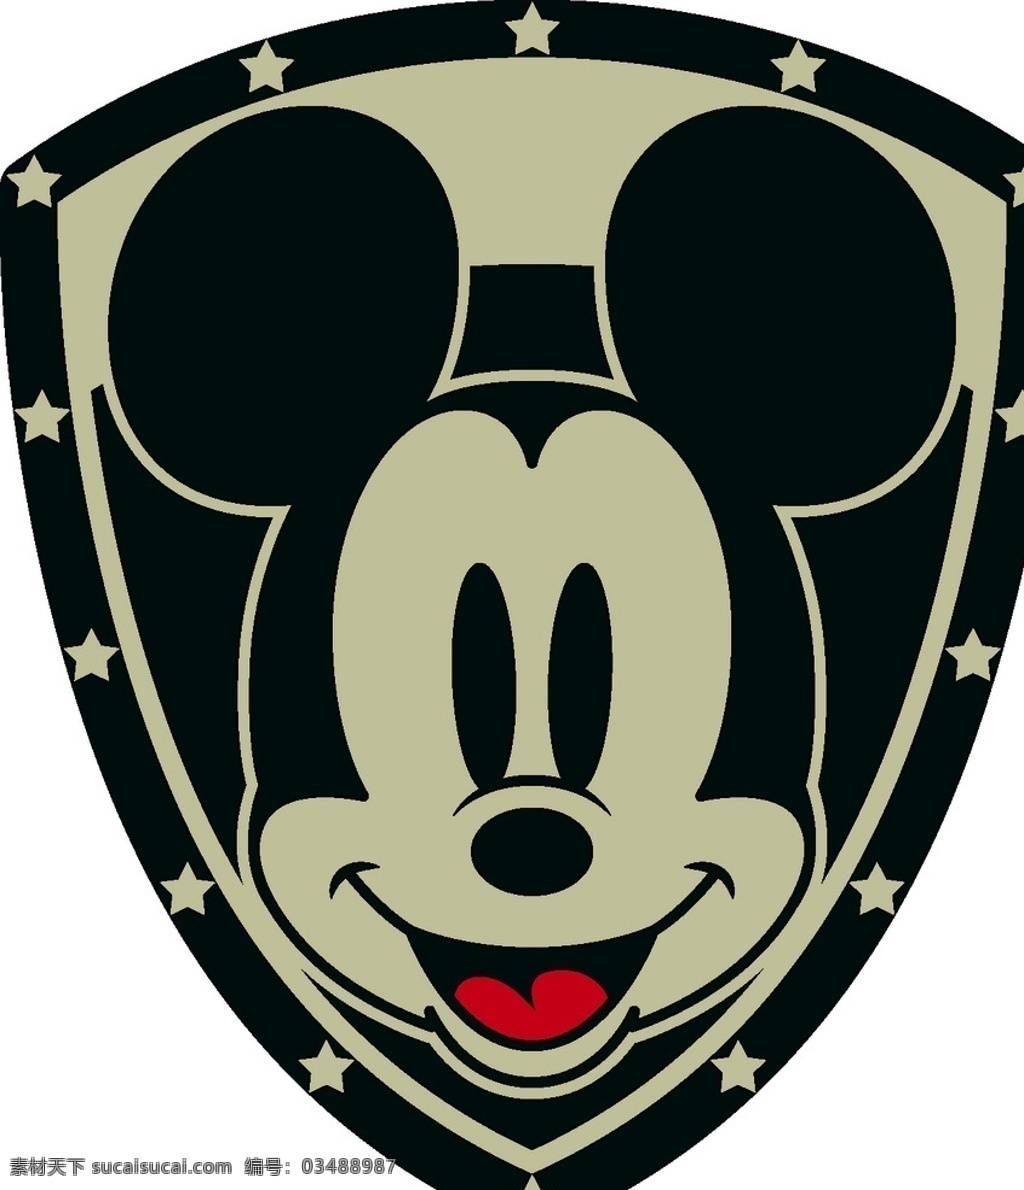 盾形米奇头 坐着的米奇 字母 mickey 迪士尼 动画 卡通 米老鼠 米奇 高飞 mouse 伸手米奇 服装设计